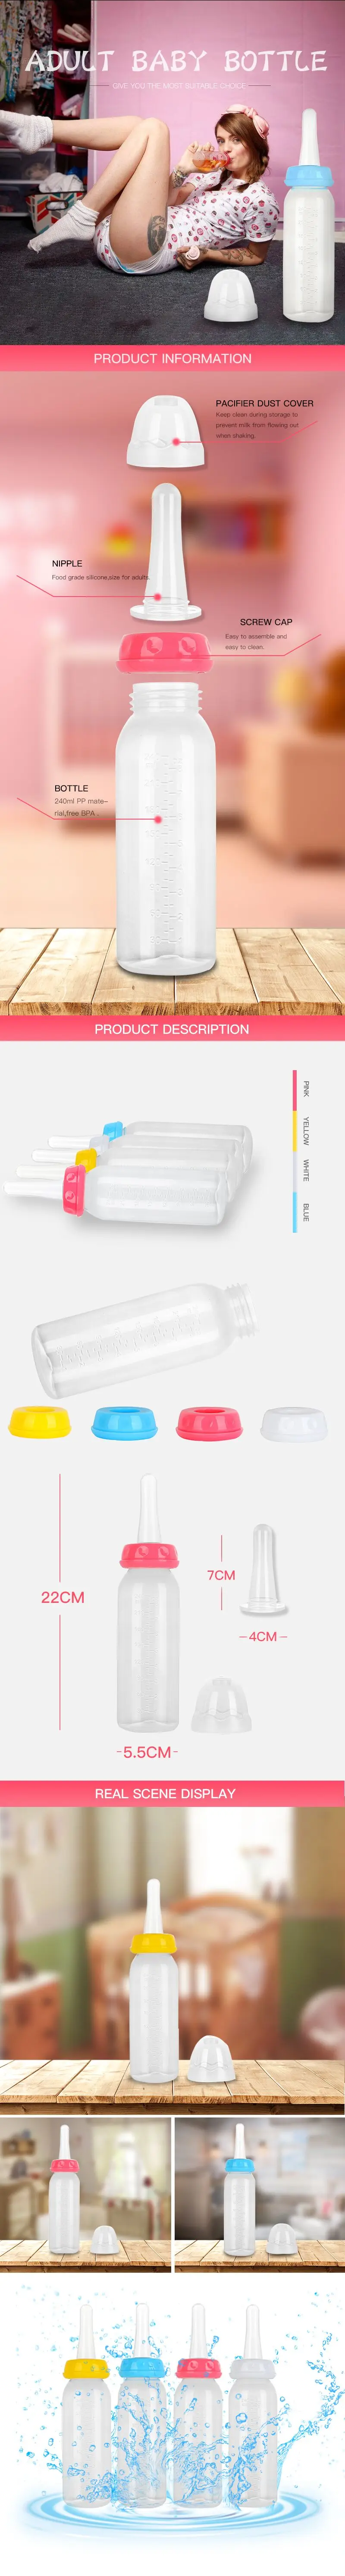 Взрослая Детская Бутылочка-4 цвета ABDL& DDLG Бутылочки для молока с единорогом идеально подходят для игр по возрасту/маленькое пространство Бутылка Ddlg для папы маленькой девочки